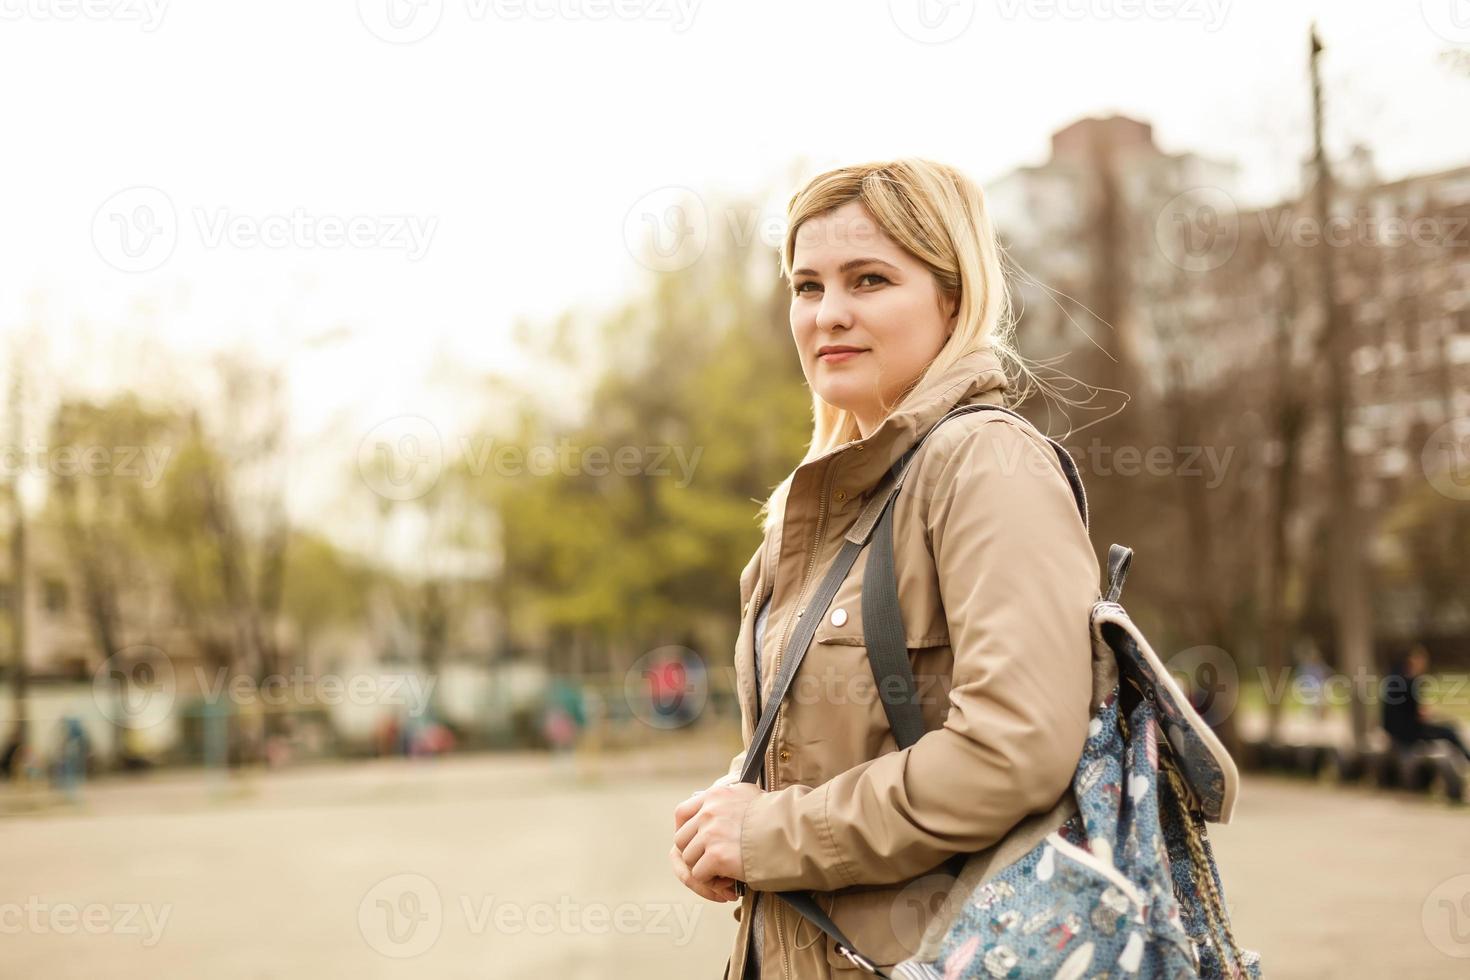 jovem hipster com mochila vintage verde-oliva, sentado na grama no parque. foto